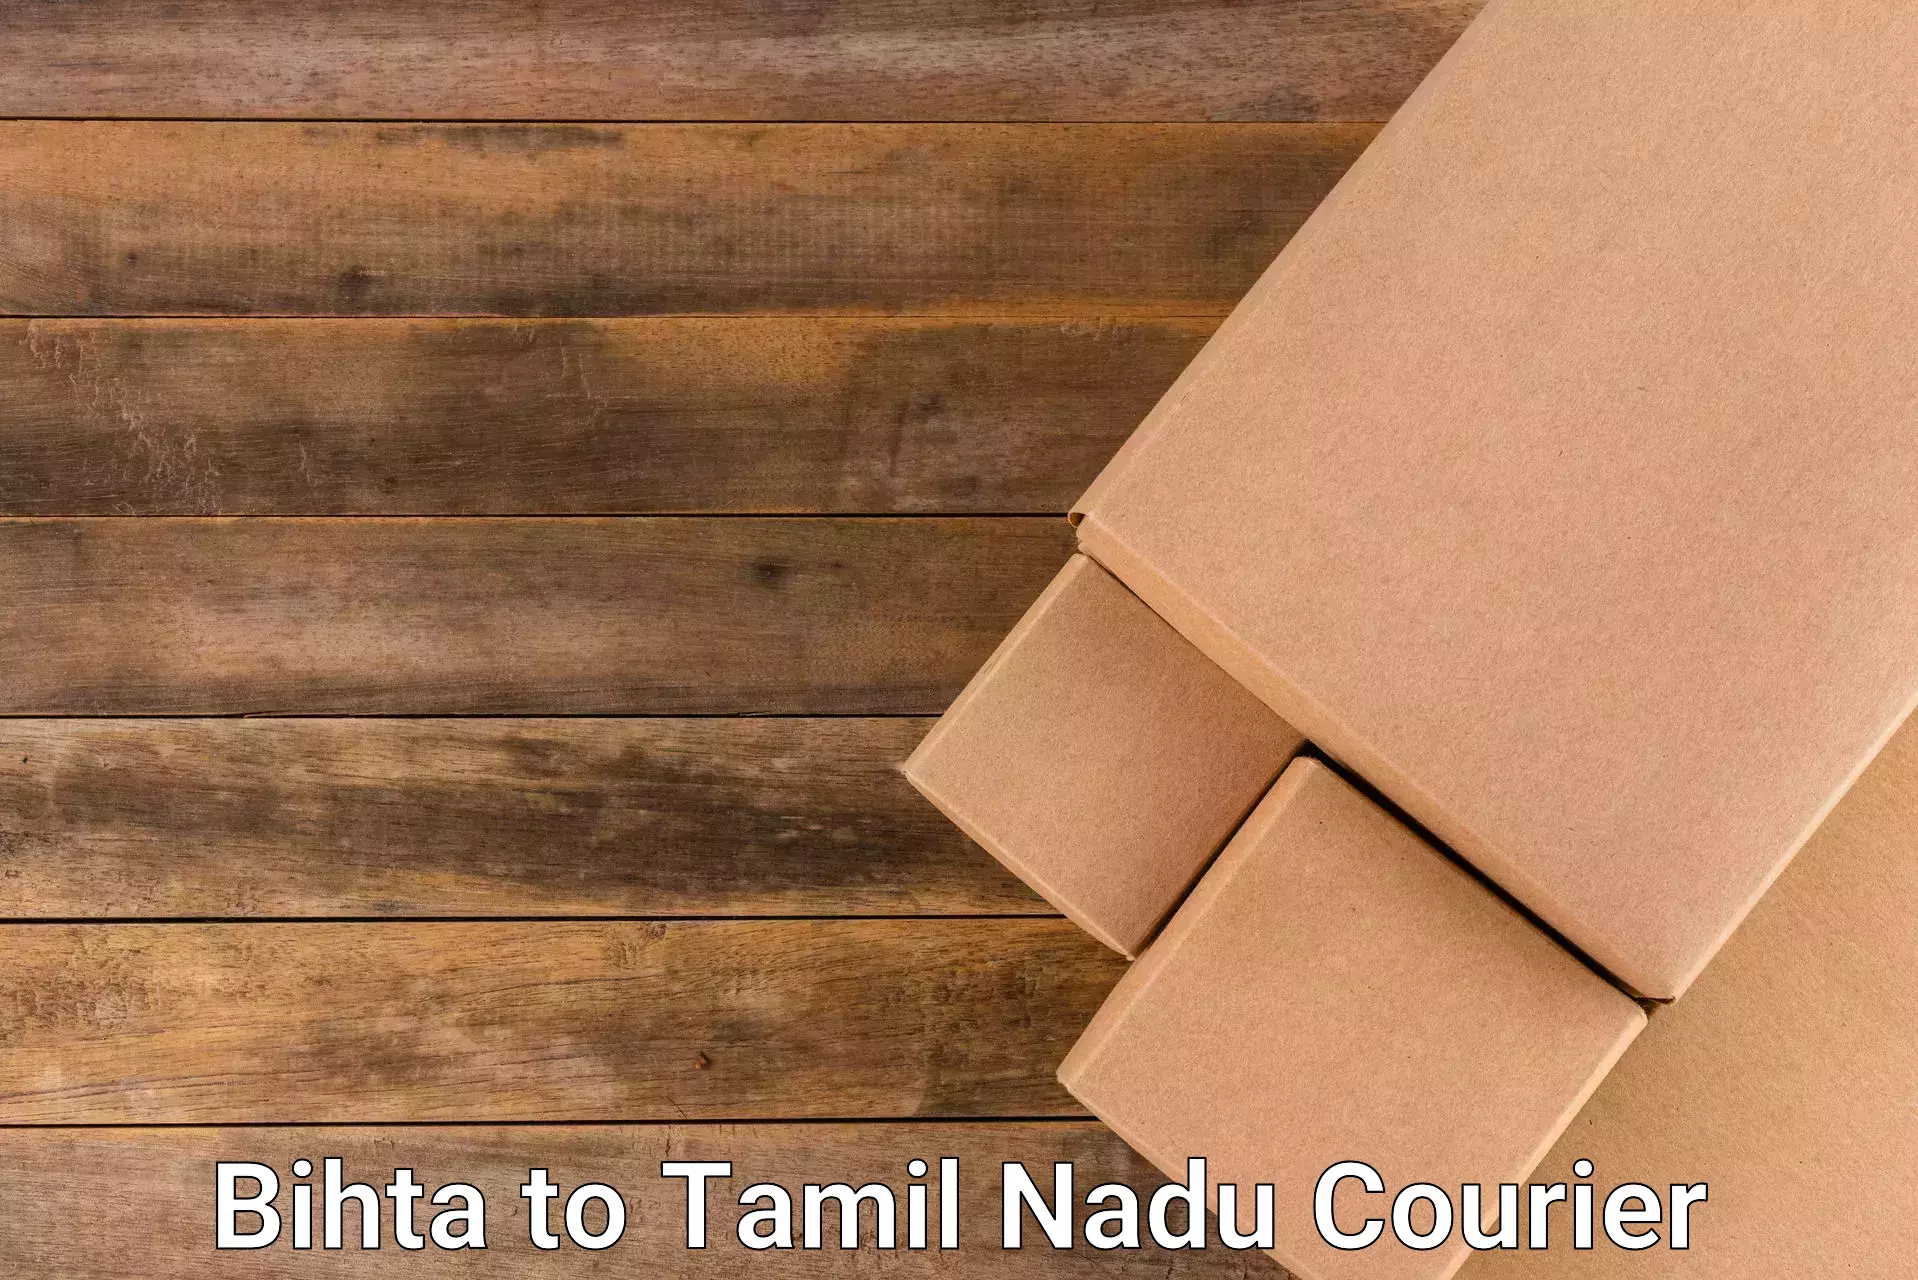 Corporate courier solutions Bihta to Thirukkattupalli